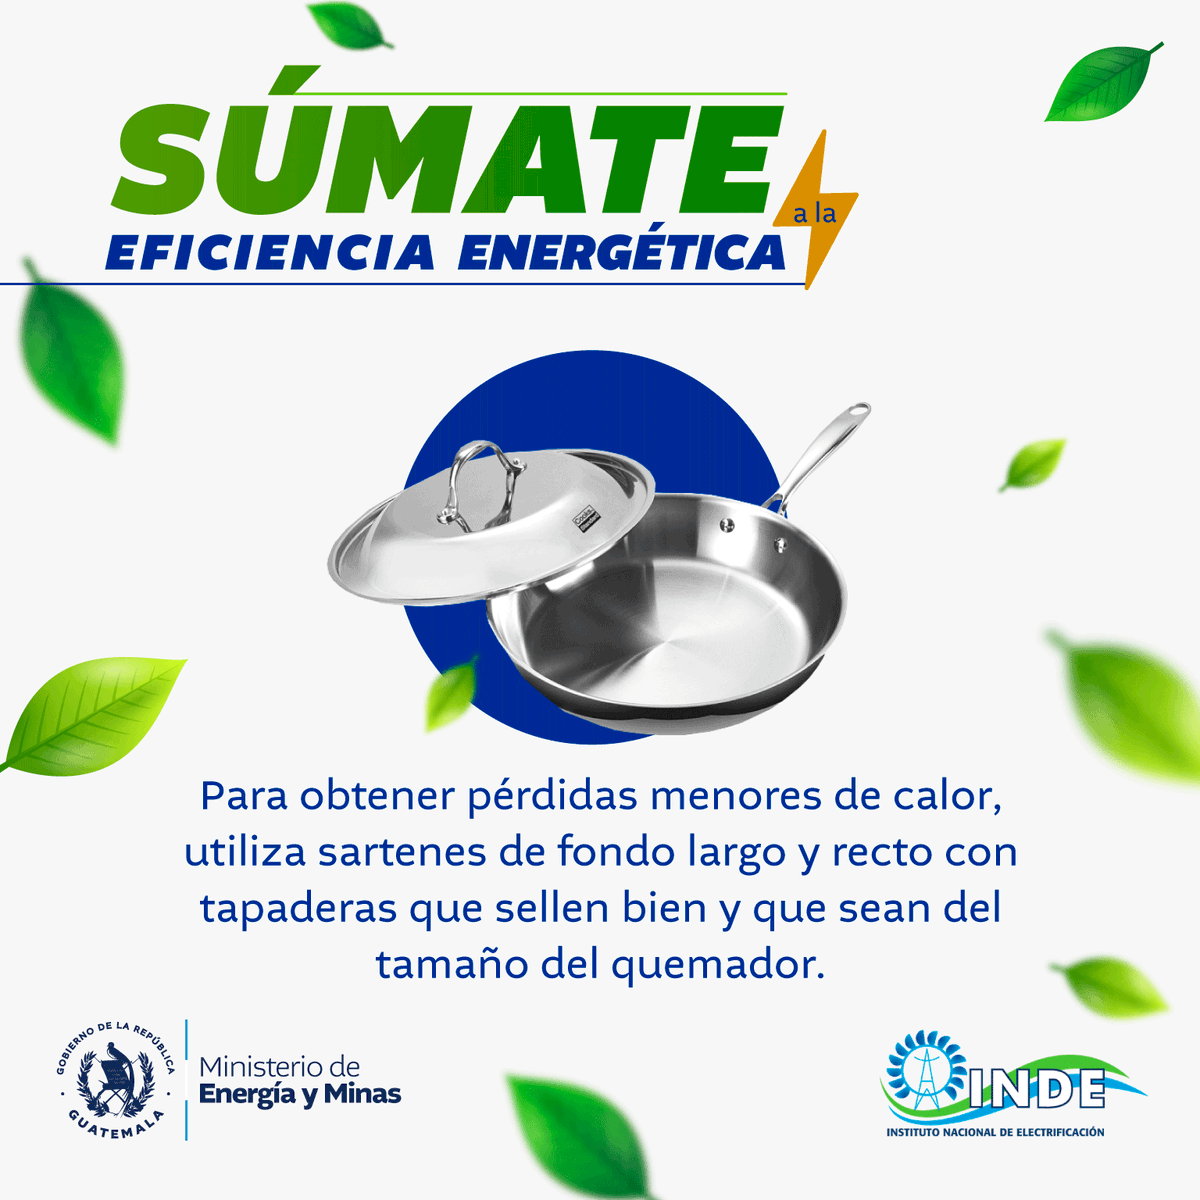 #MEMGT | Acá una recomendación para impulsar el ahorro energético.

¡Juntos por un desarrollo sostenible para todos los guatemaltecos!

#EficienciaEnergética
#GuatemalaSaleAdelante